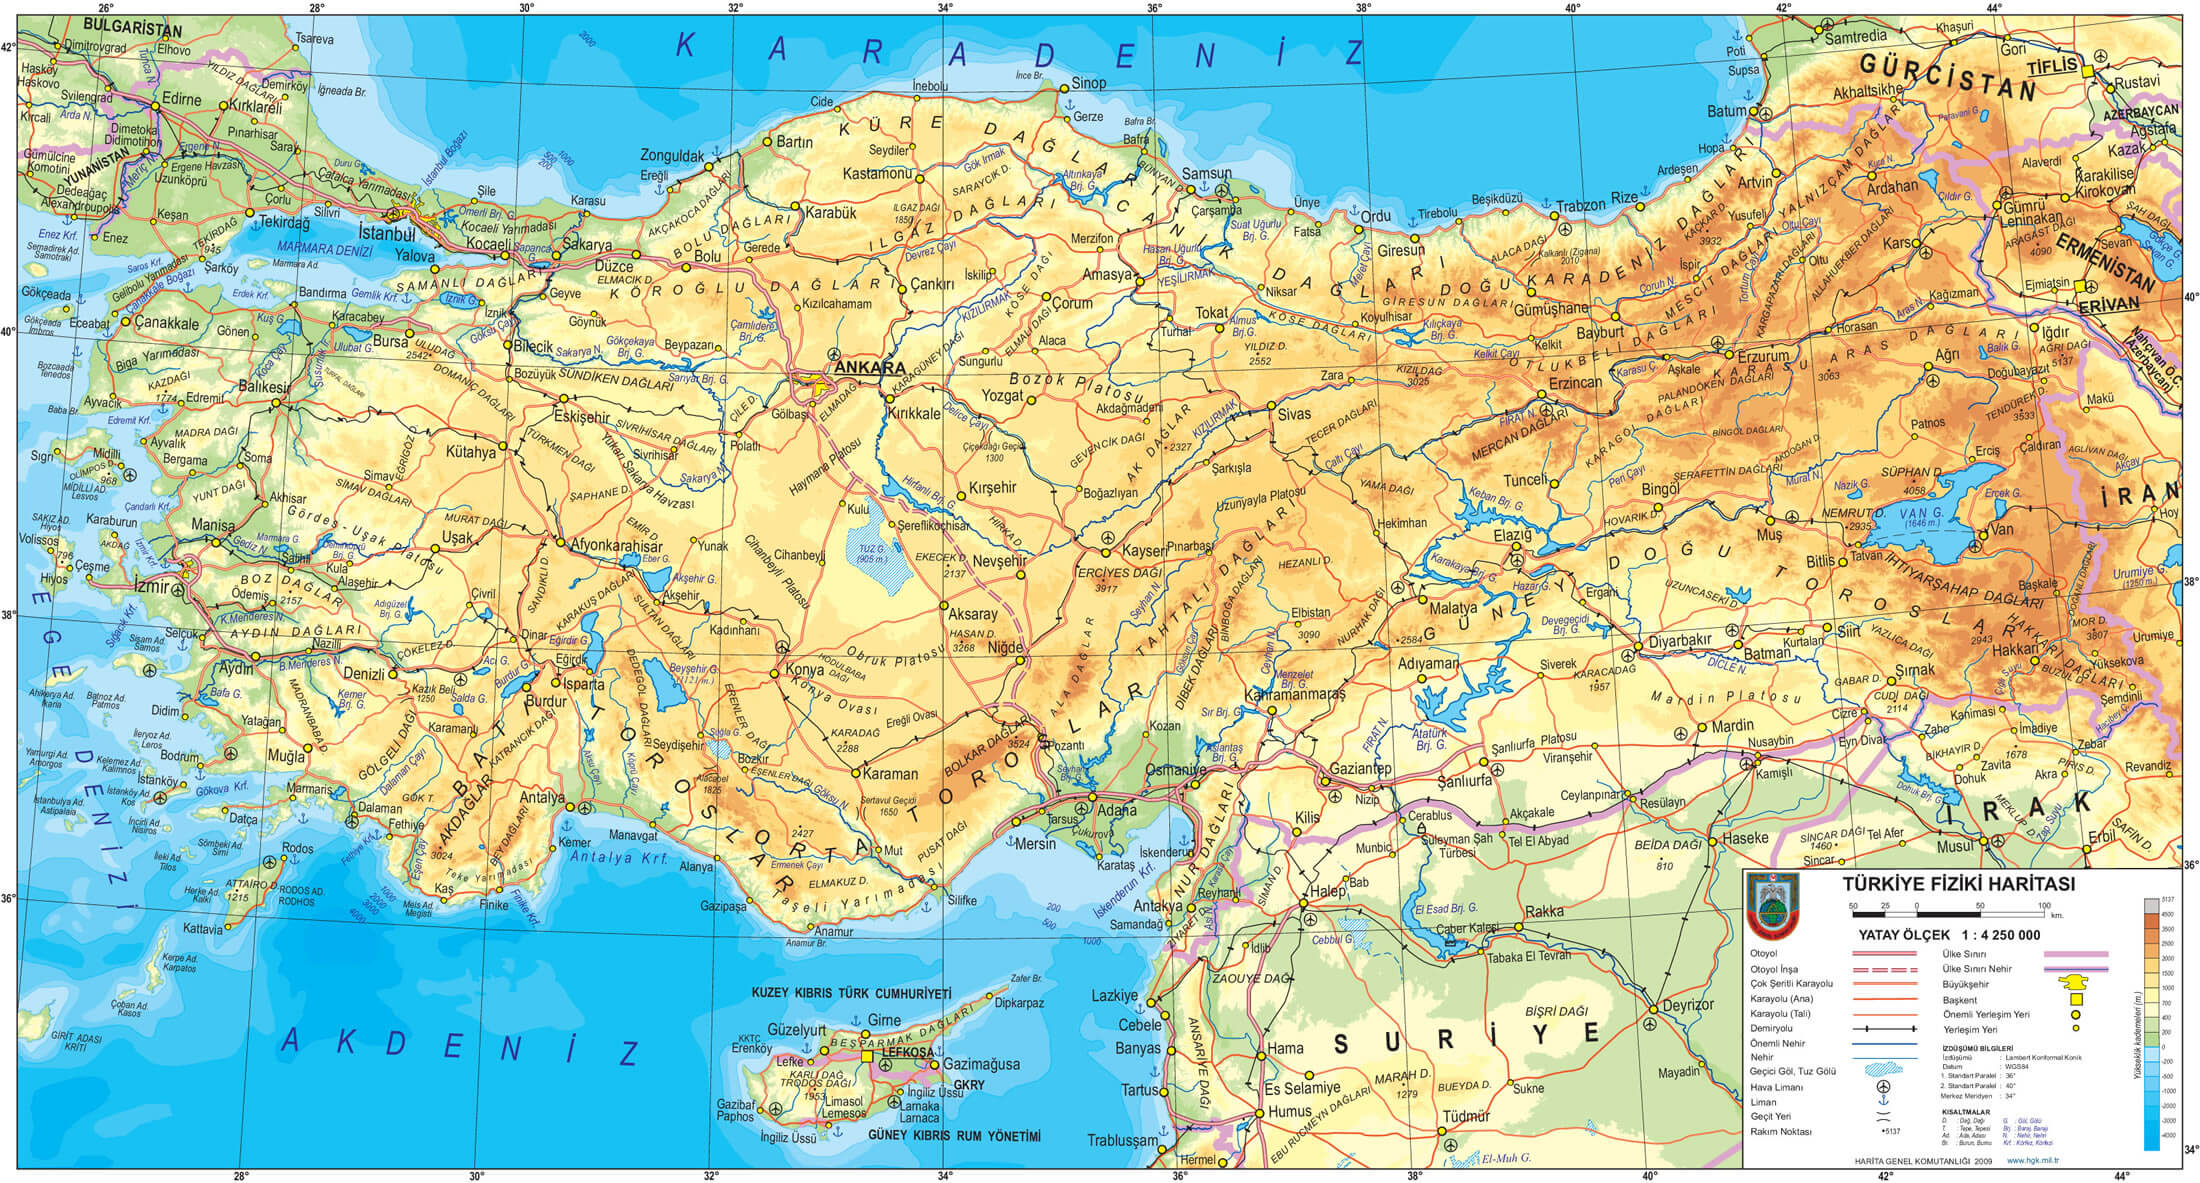 turkiye'nin fiziki haritasi